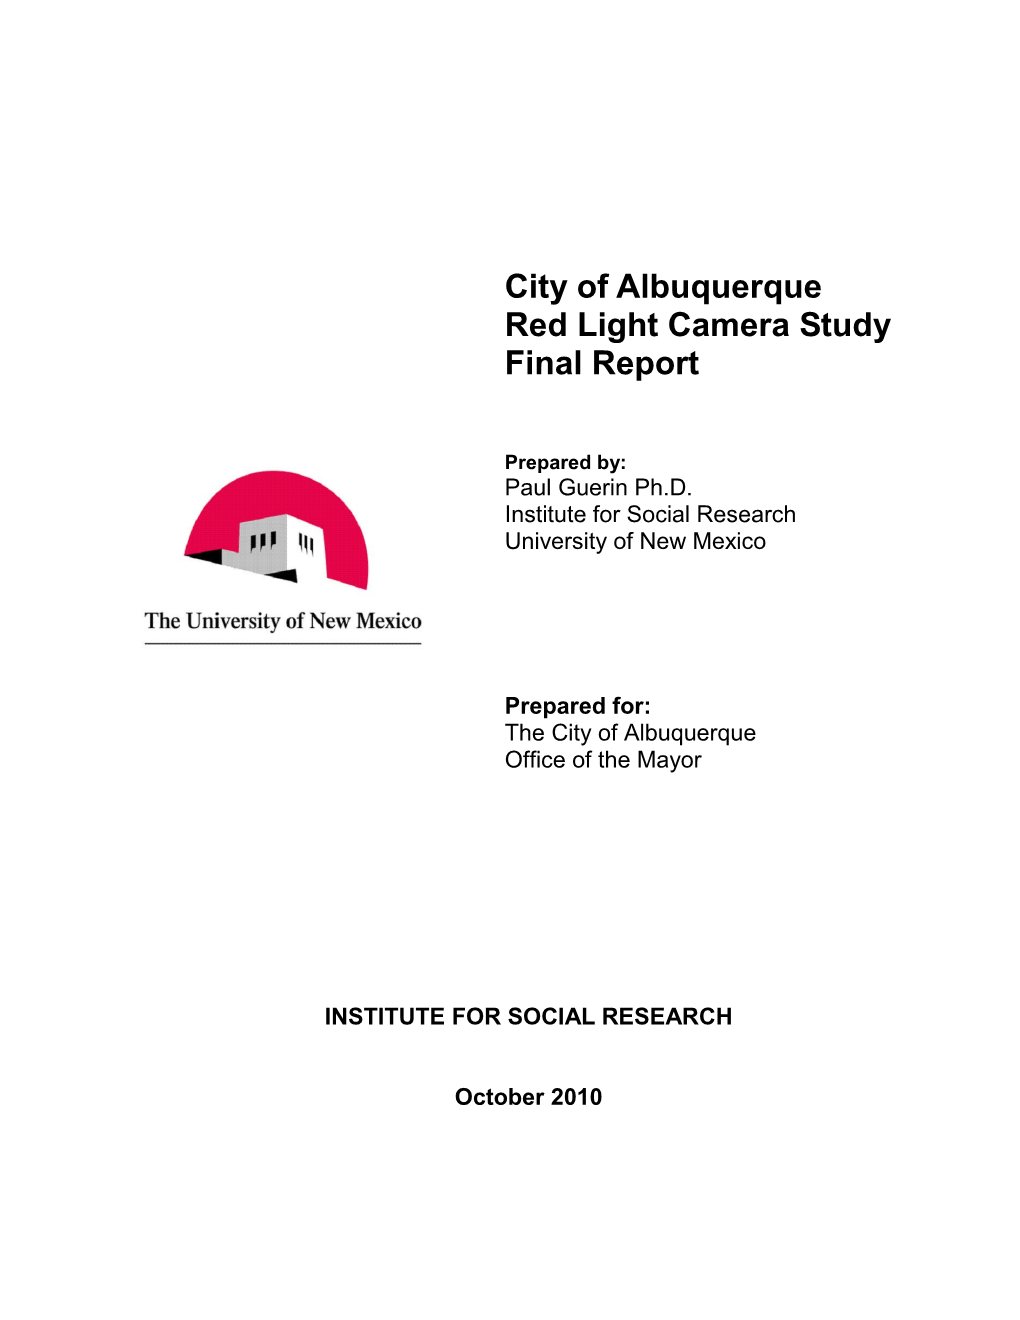 City of Albuquerque Red Light Camera Study Final Report